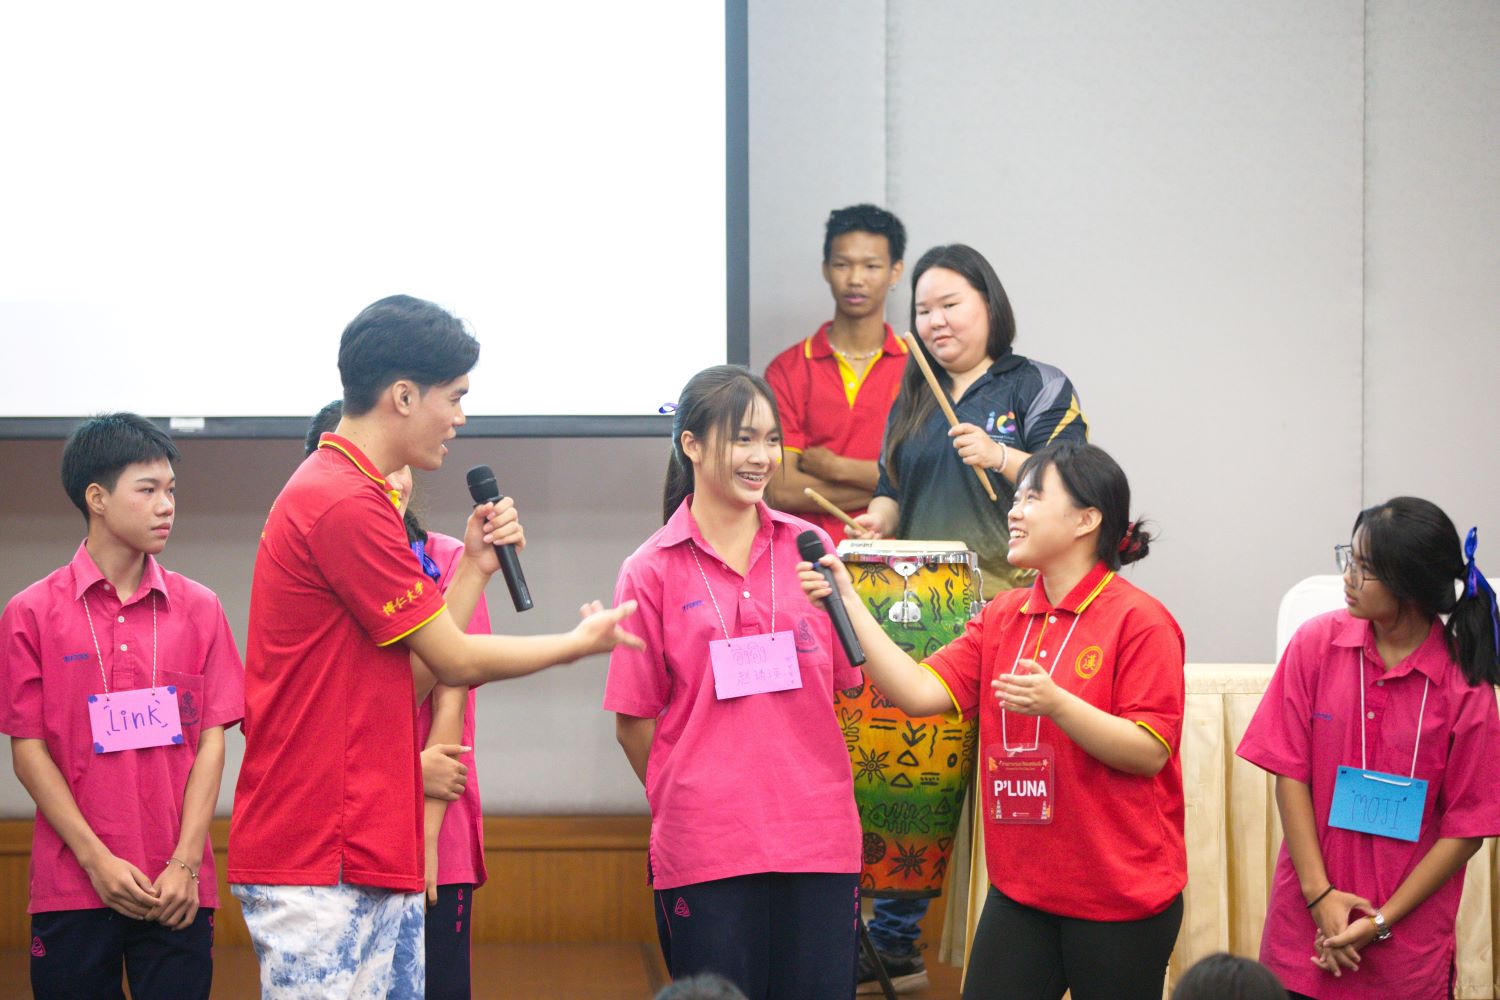 วิทยาลัยนานาชาติ DPU ปลื้มค่ายภาษาจีน ปังไม่หยุด รร.มัธยม จ่อคิวเข้าค่ายอย่างล้นหลาม เทอมเดียวค่ายพุ่งกว่า 14 ร.ร. ชี้เหตุนักลงทุนจีนแห่ทำธุรกิจในไทย ทำให้เด็กรุ่นใหม่หันเรียนภาษาจีนมากขึ้น